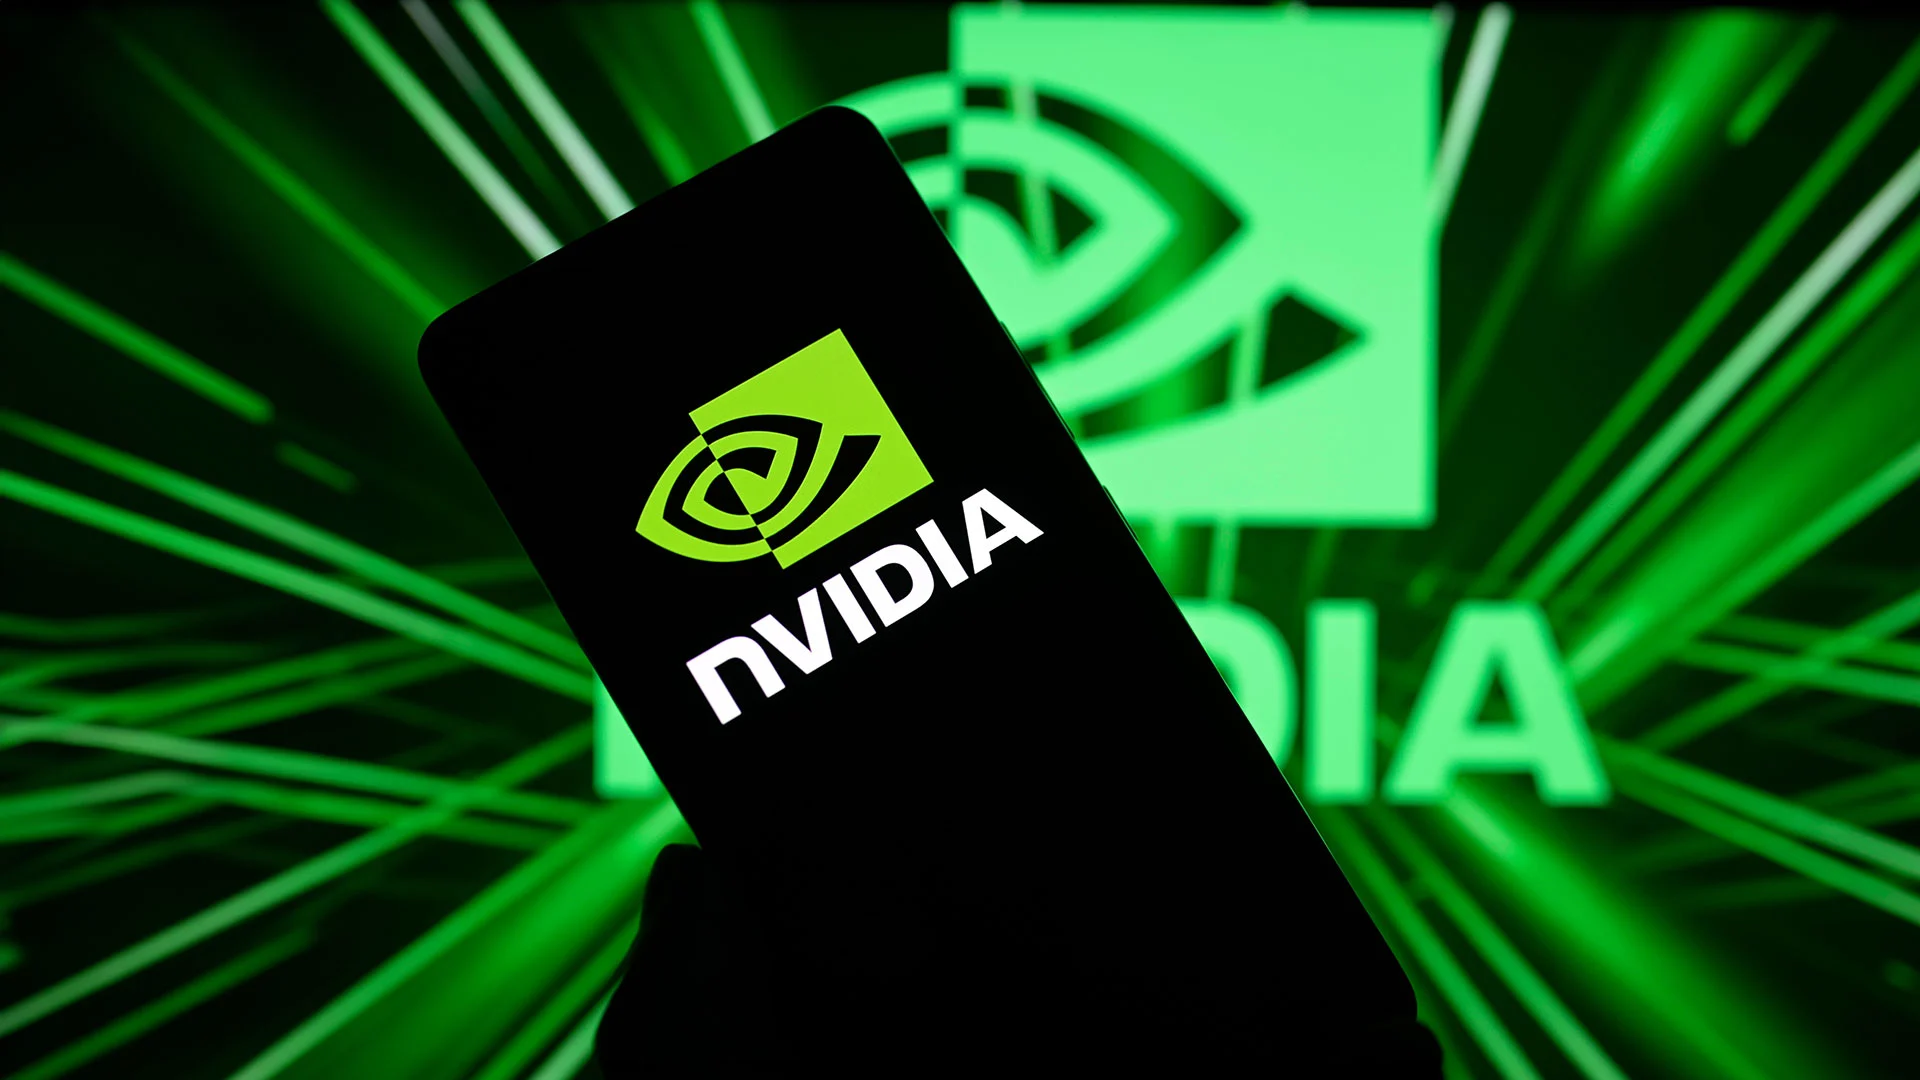 Tech&#8209;Gigant Nvidia setzt selbst auf diese 5 genialen KI&#8209;Aktien mit bis zu 85% Kurschance (Foto: JRdes/Shutterstock)